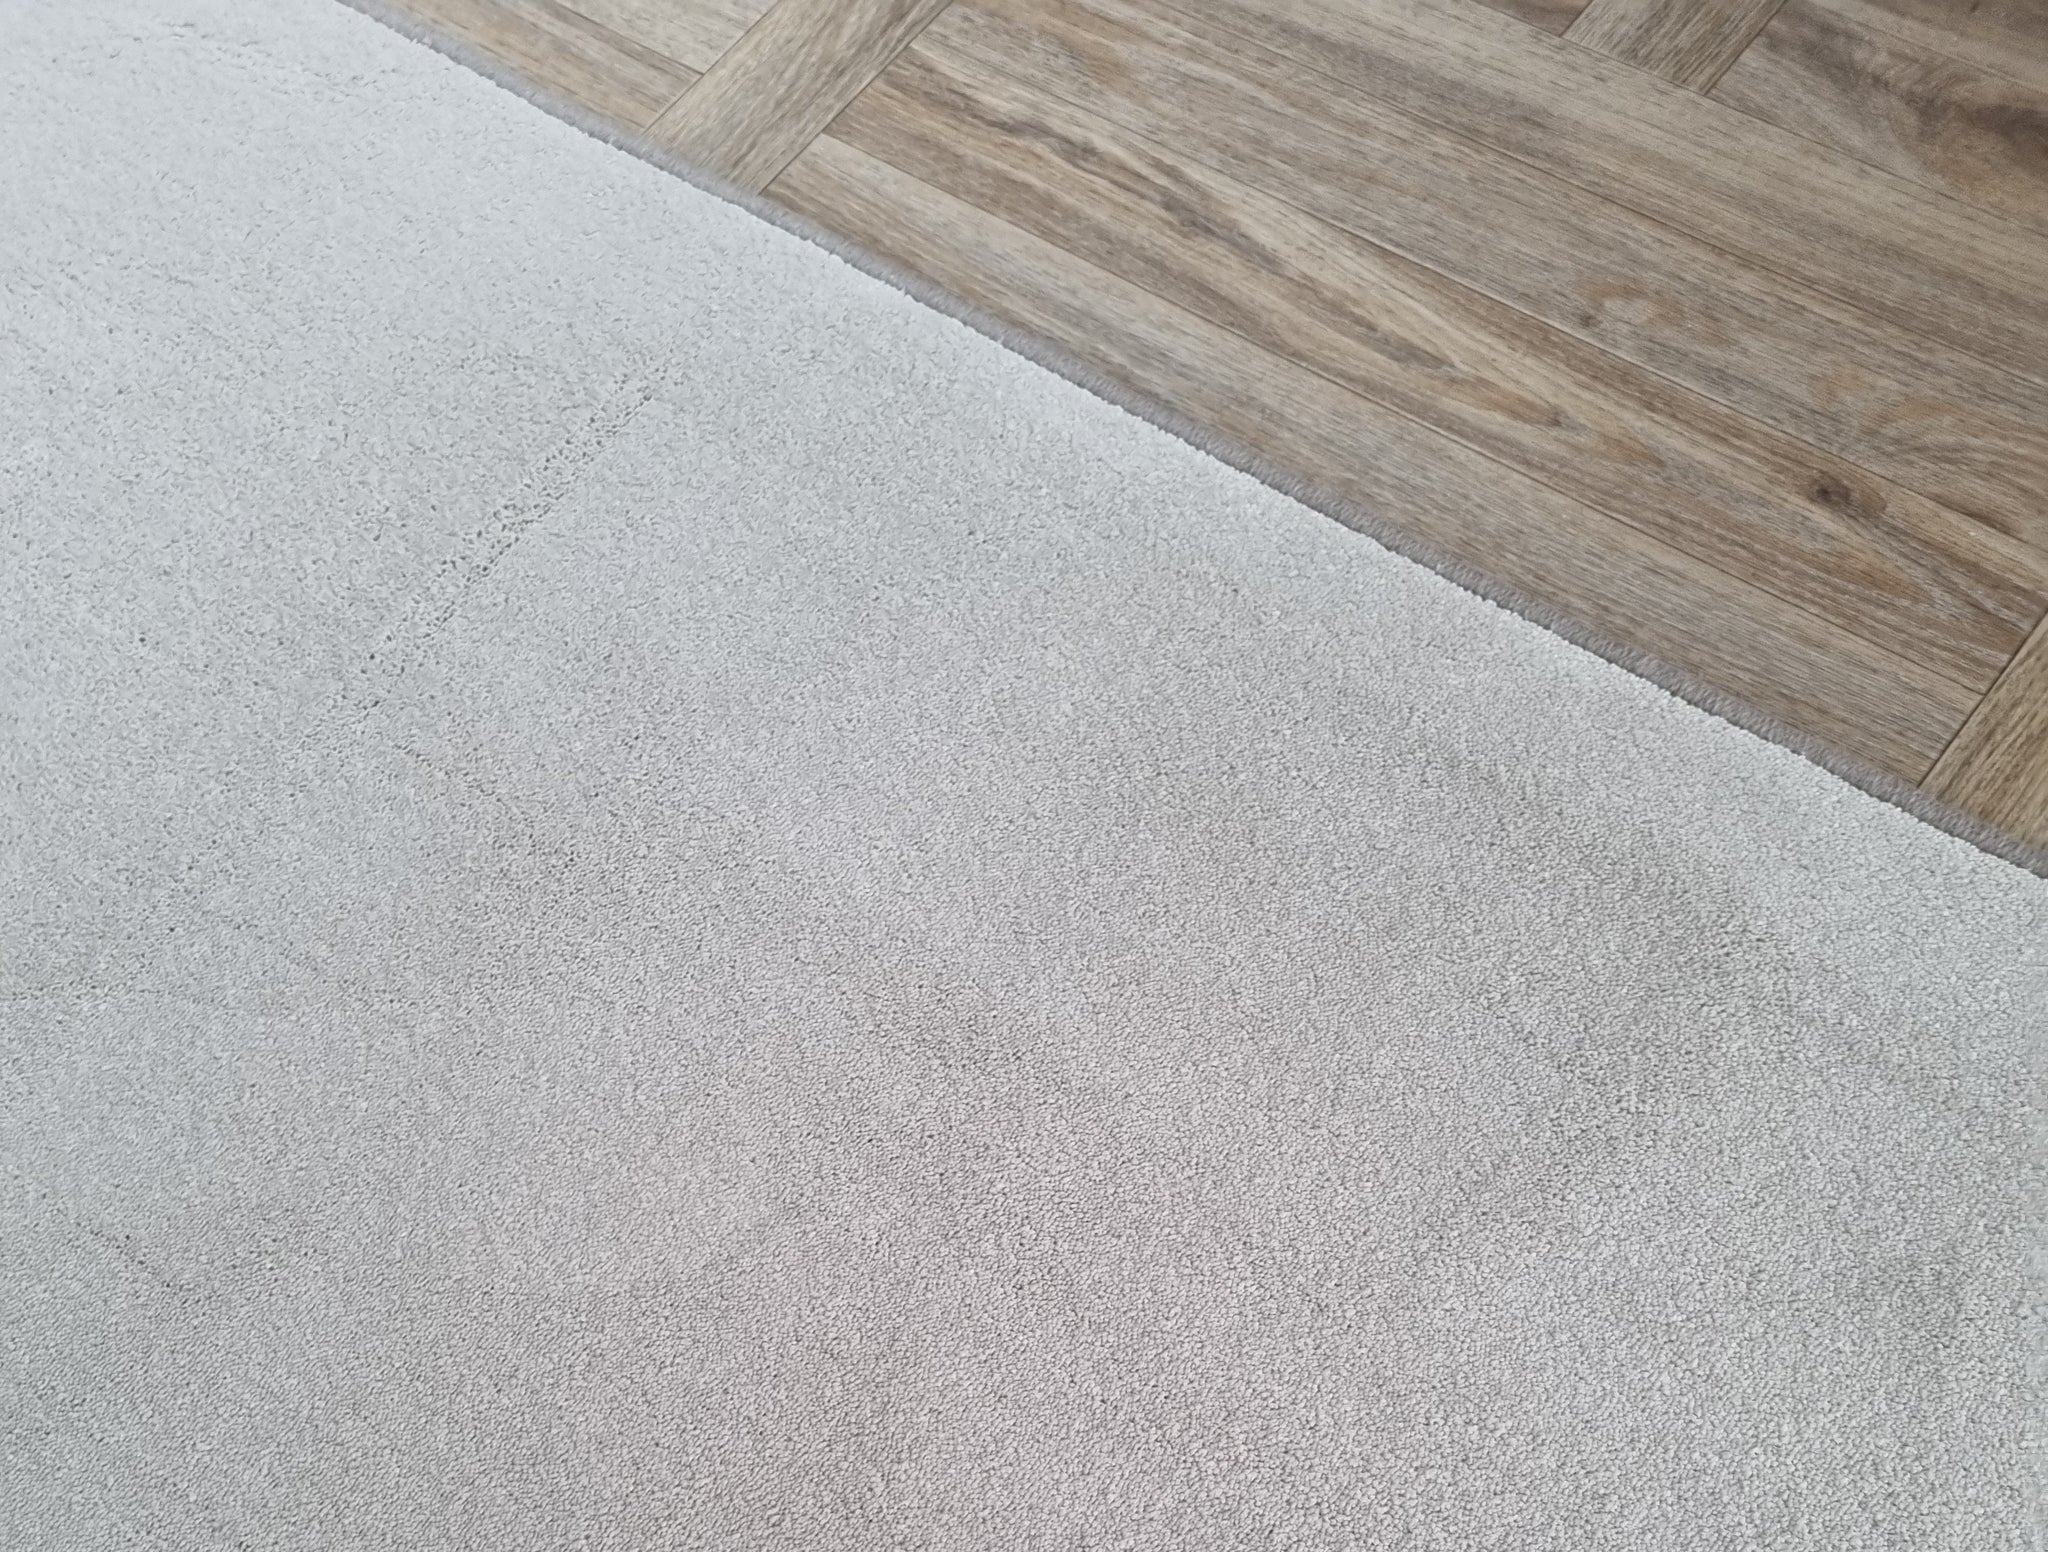 Nylon carpet floor, landing hallway runner with whipped border